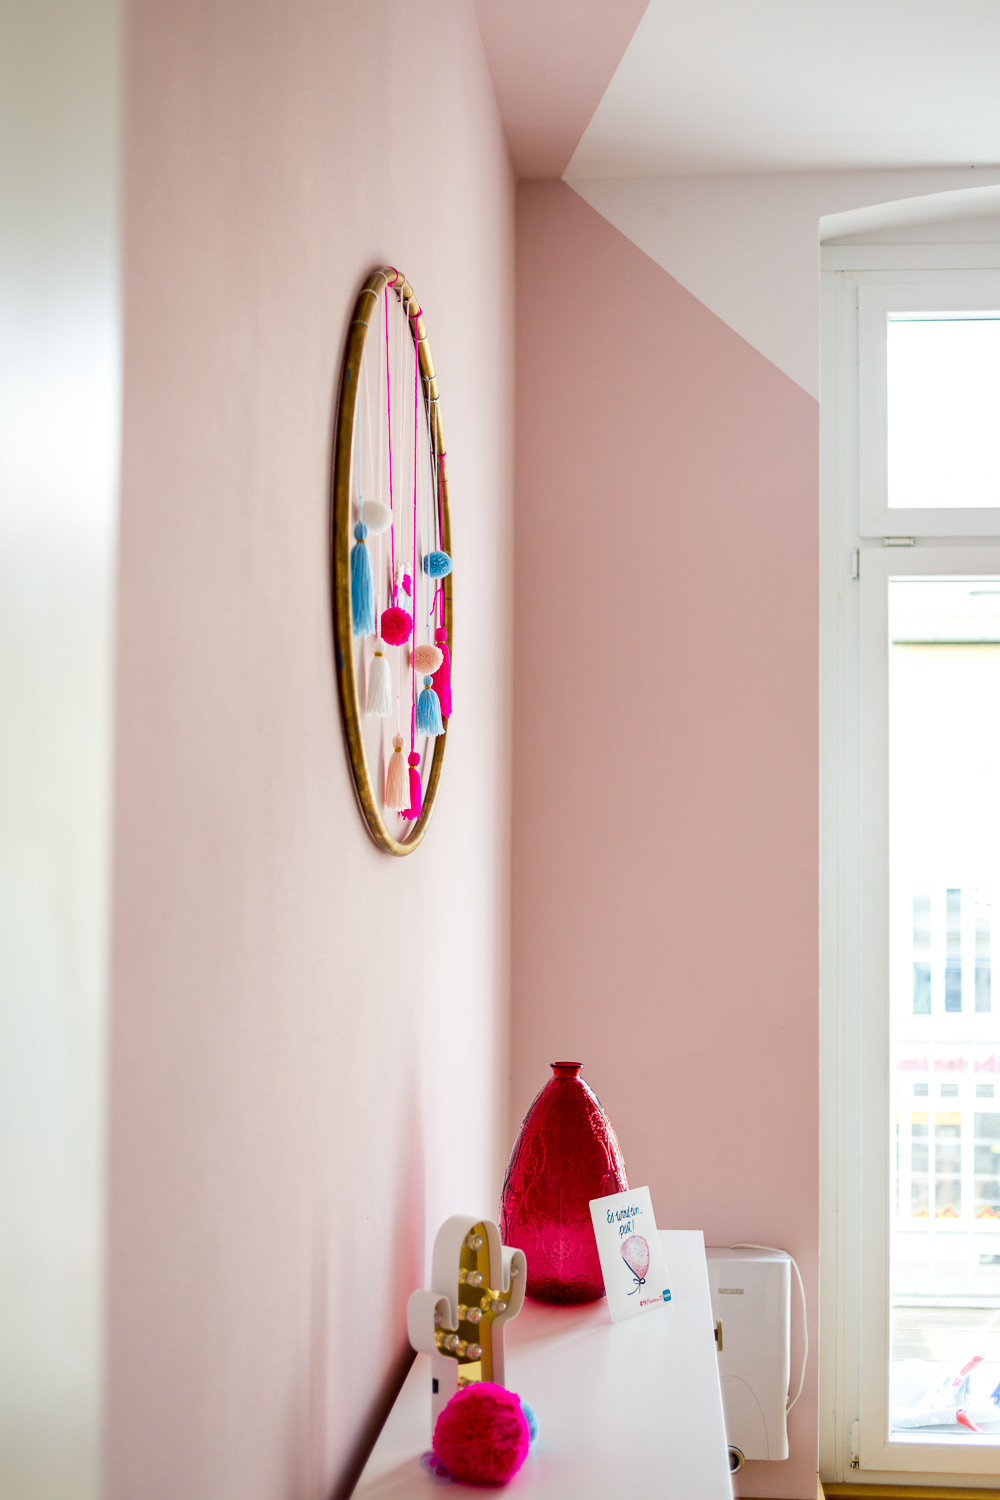 Schöner Wohnen Farbe Architects Finest Test Lingotto Rosa Kinderzimmer DIY Hula Hoop Quasten Pom Poms